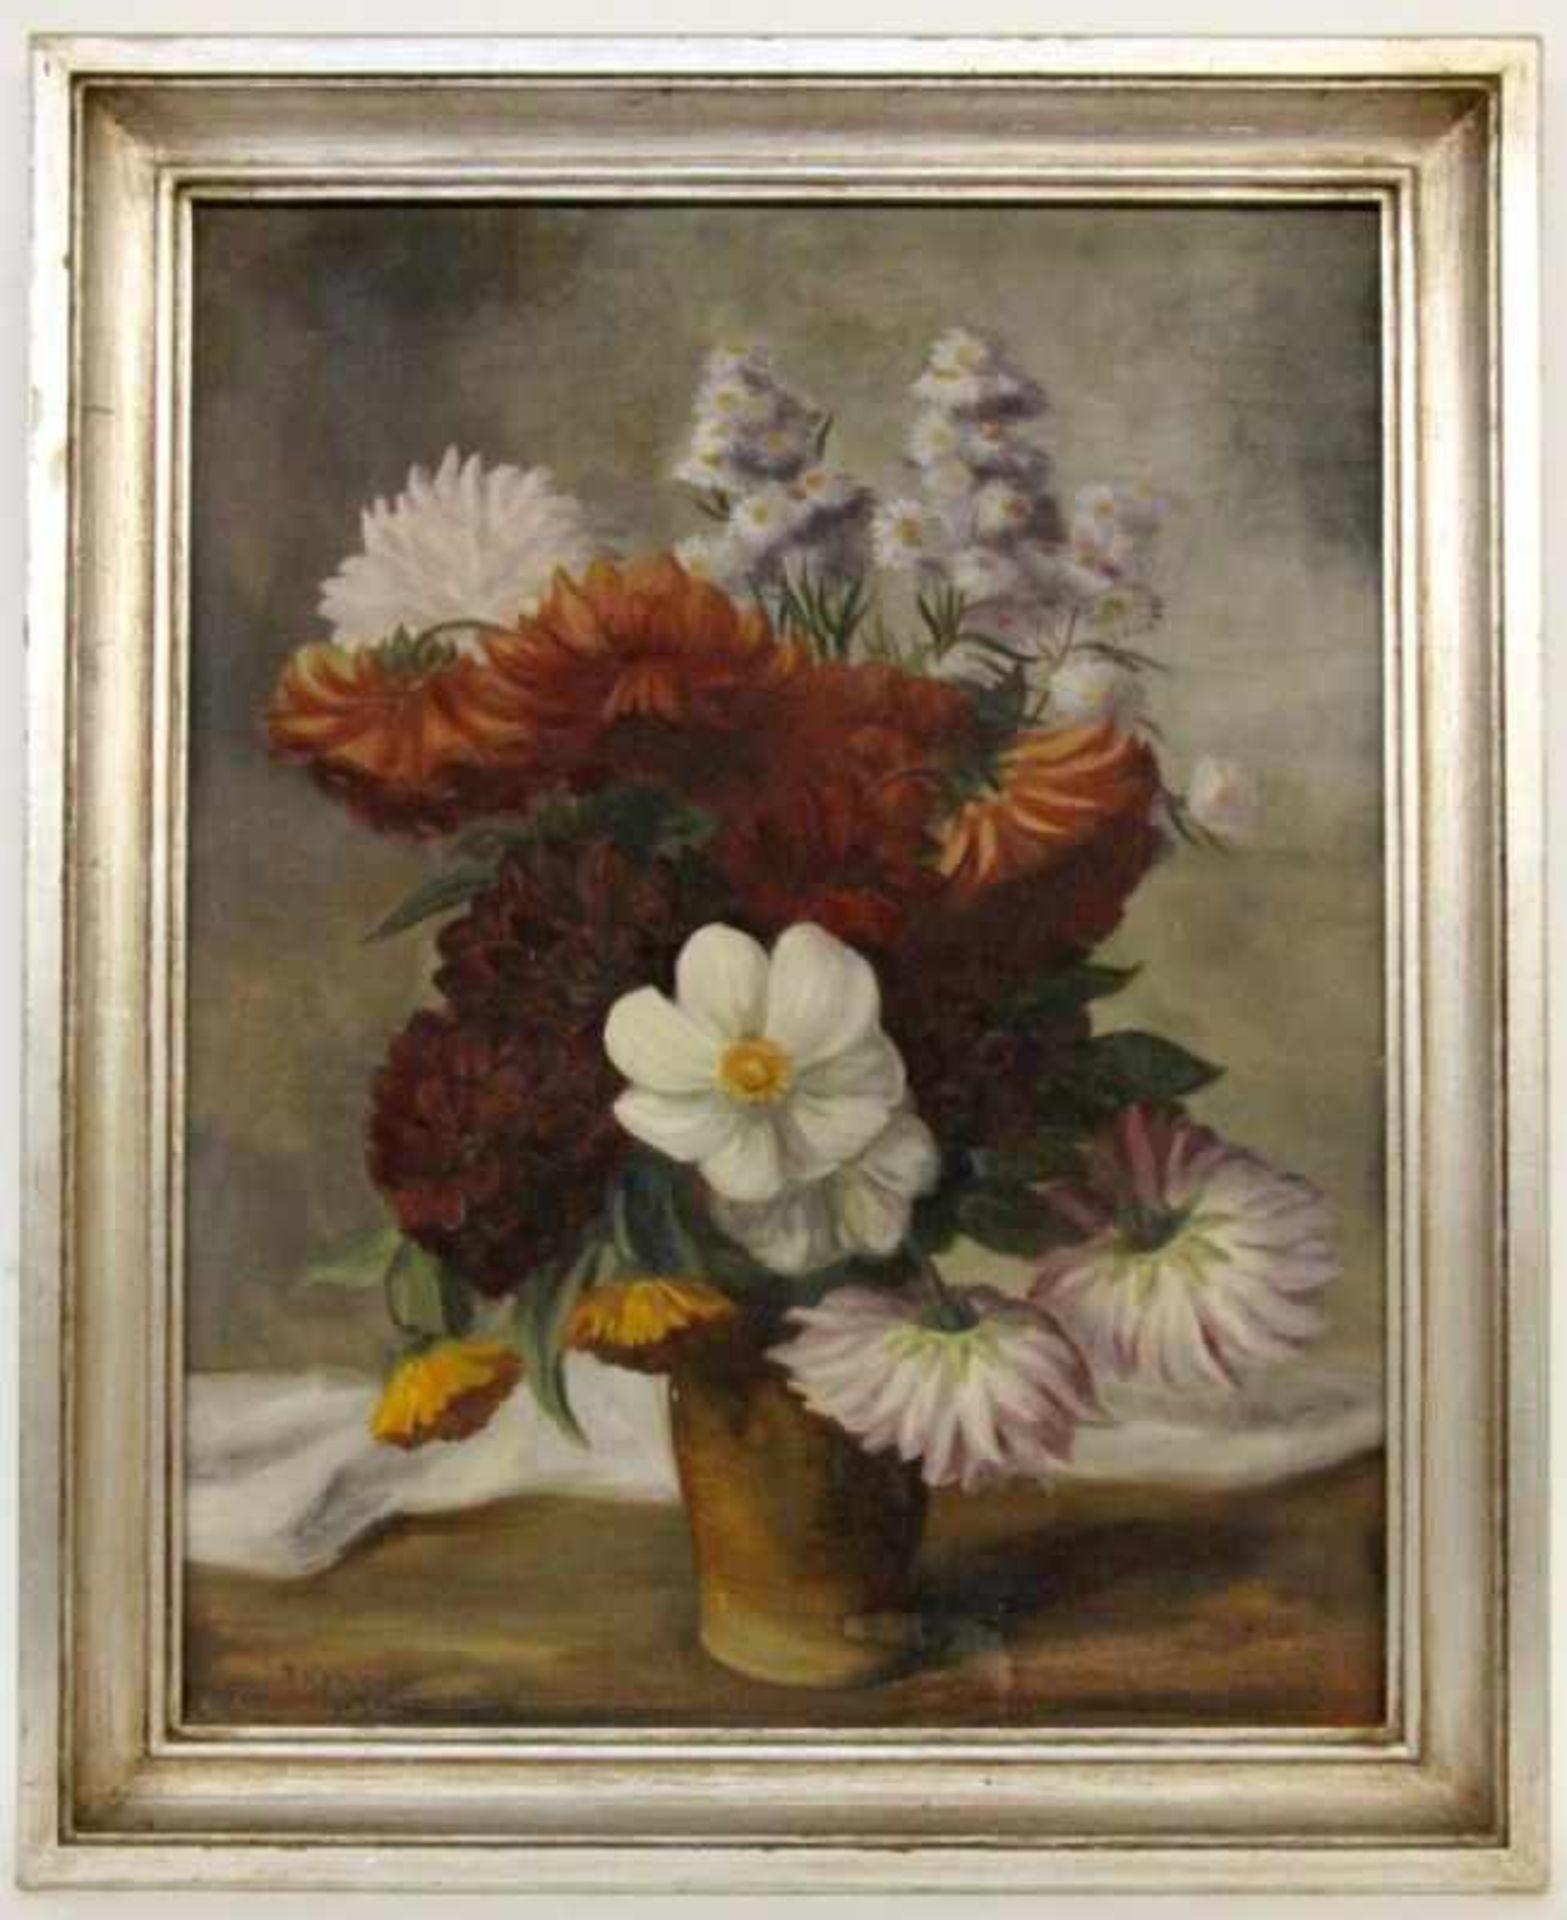 KÄLBERER, PAUL Stuttgart 1896 - 1974 Glatt Flowers in the Vase. Oil on canvas, signed and<